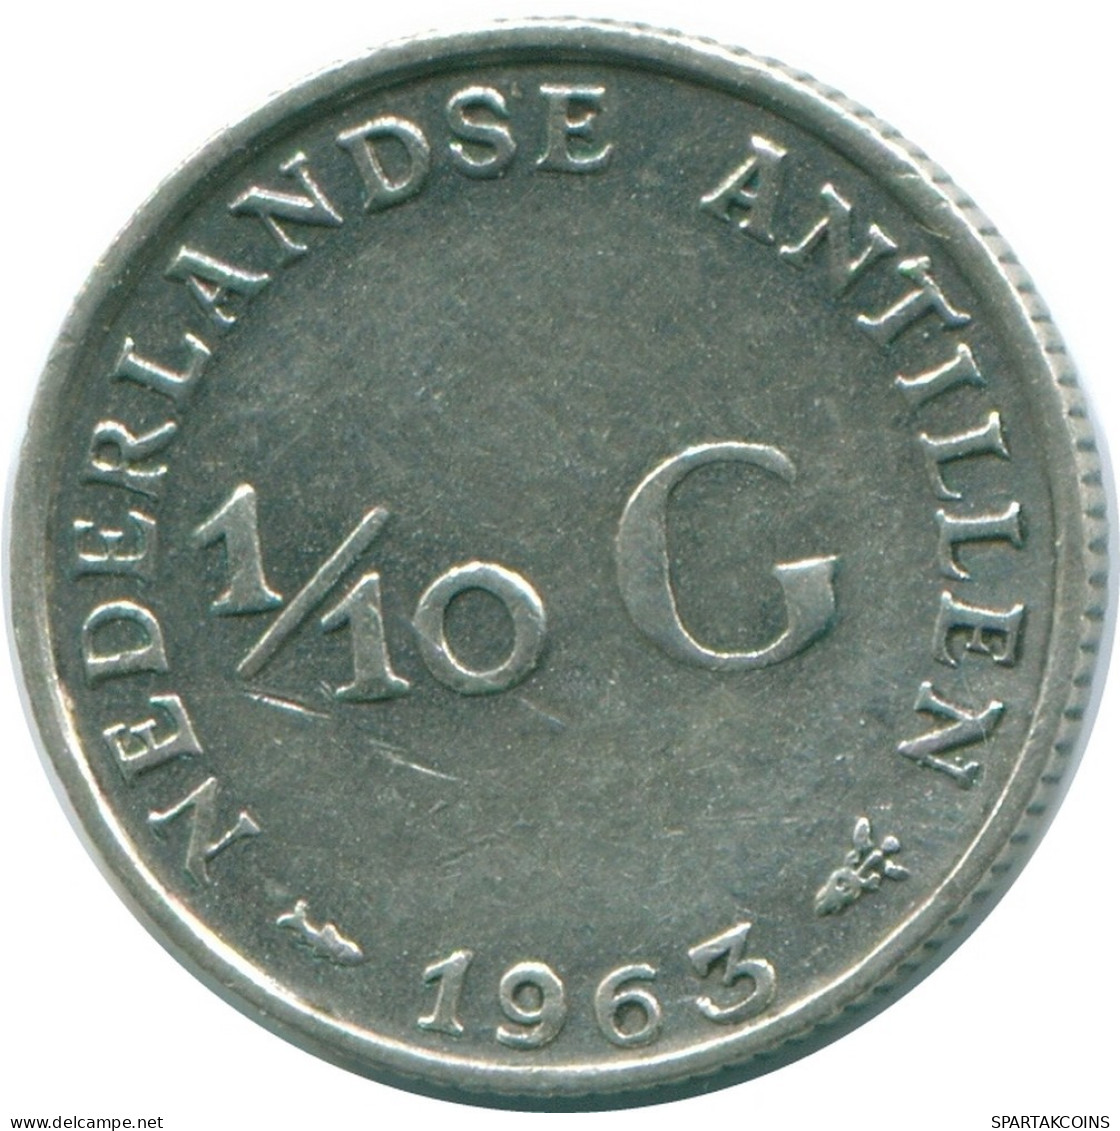 1/10 GULDEN 1963 NIEDERLÄNDISCHE ANTILLEN SILBER Koloniale Münze #NL12529.3.D.A - Antille Olandesi